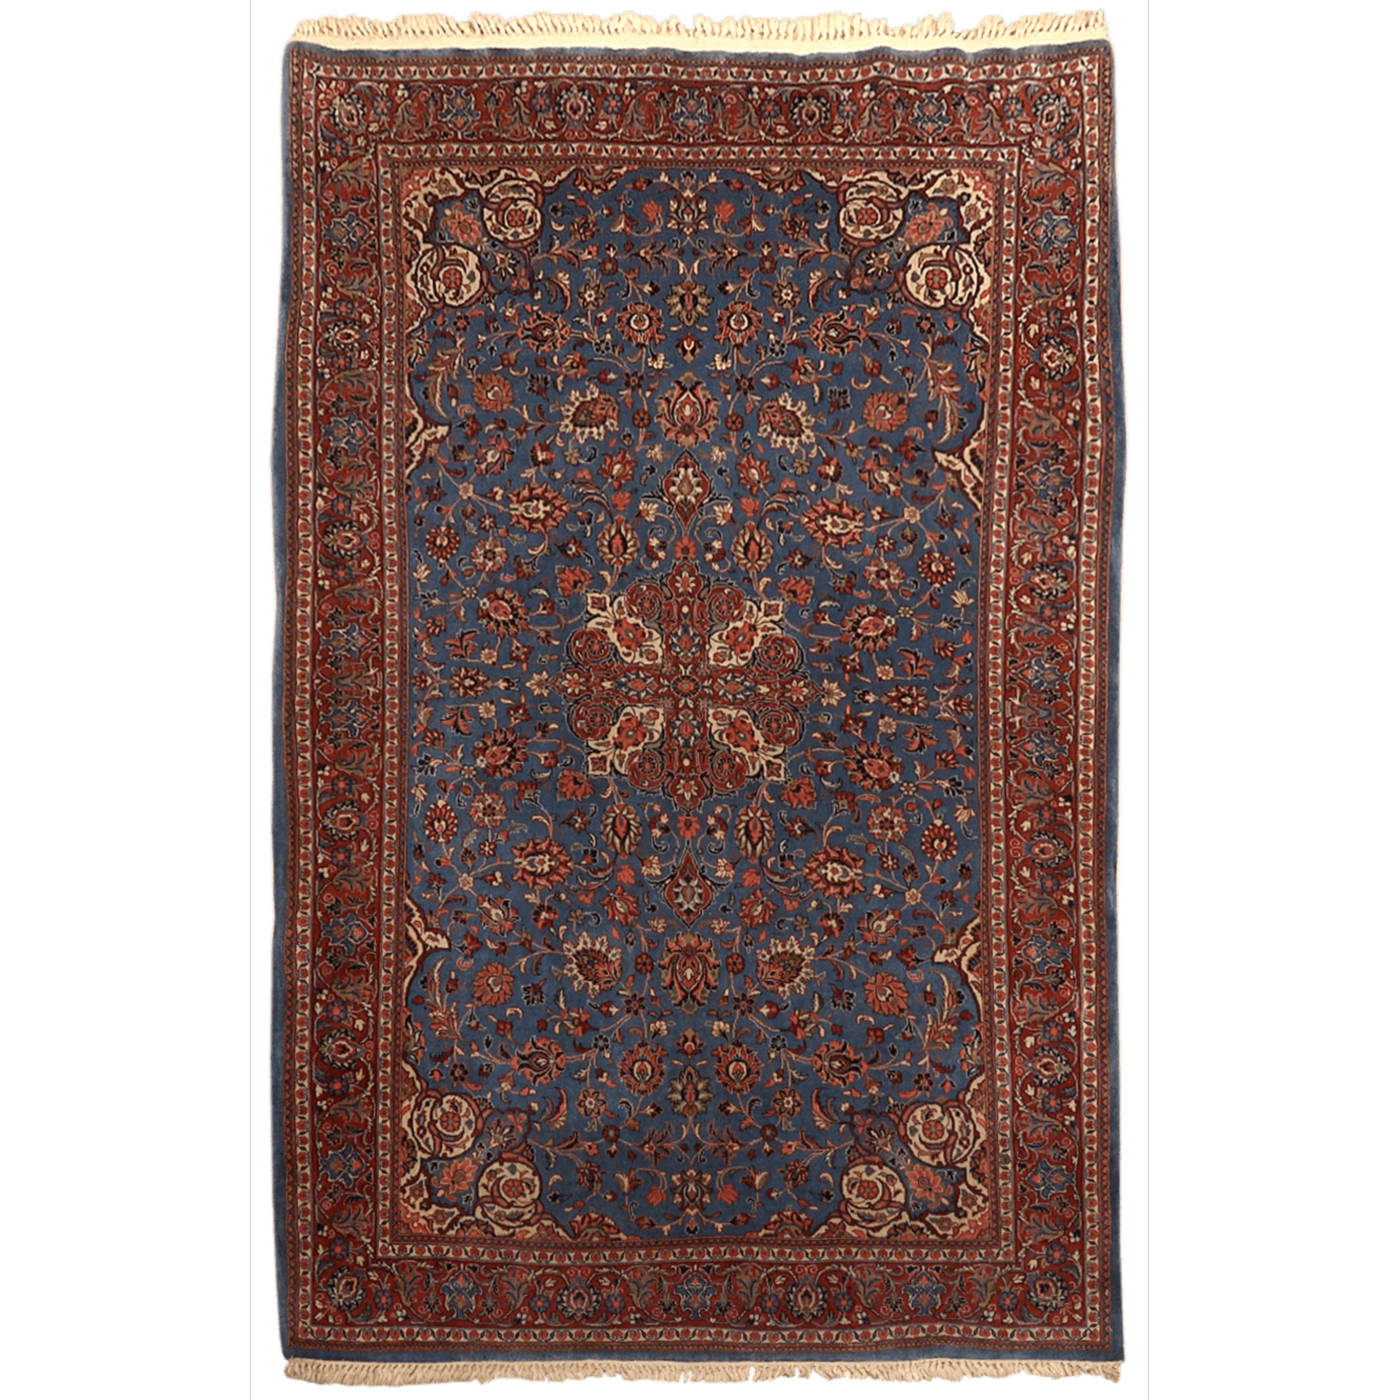 Perzisch tapijt - 205 x cm - Blauw, Rood - Wol - Isfa — Orientalized